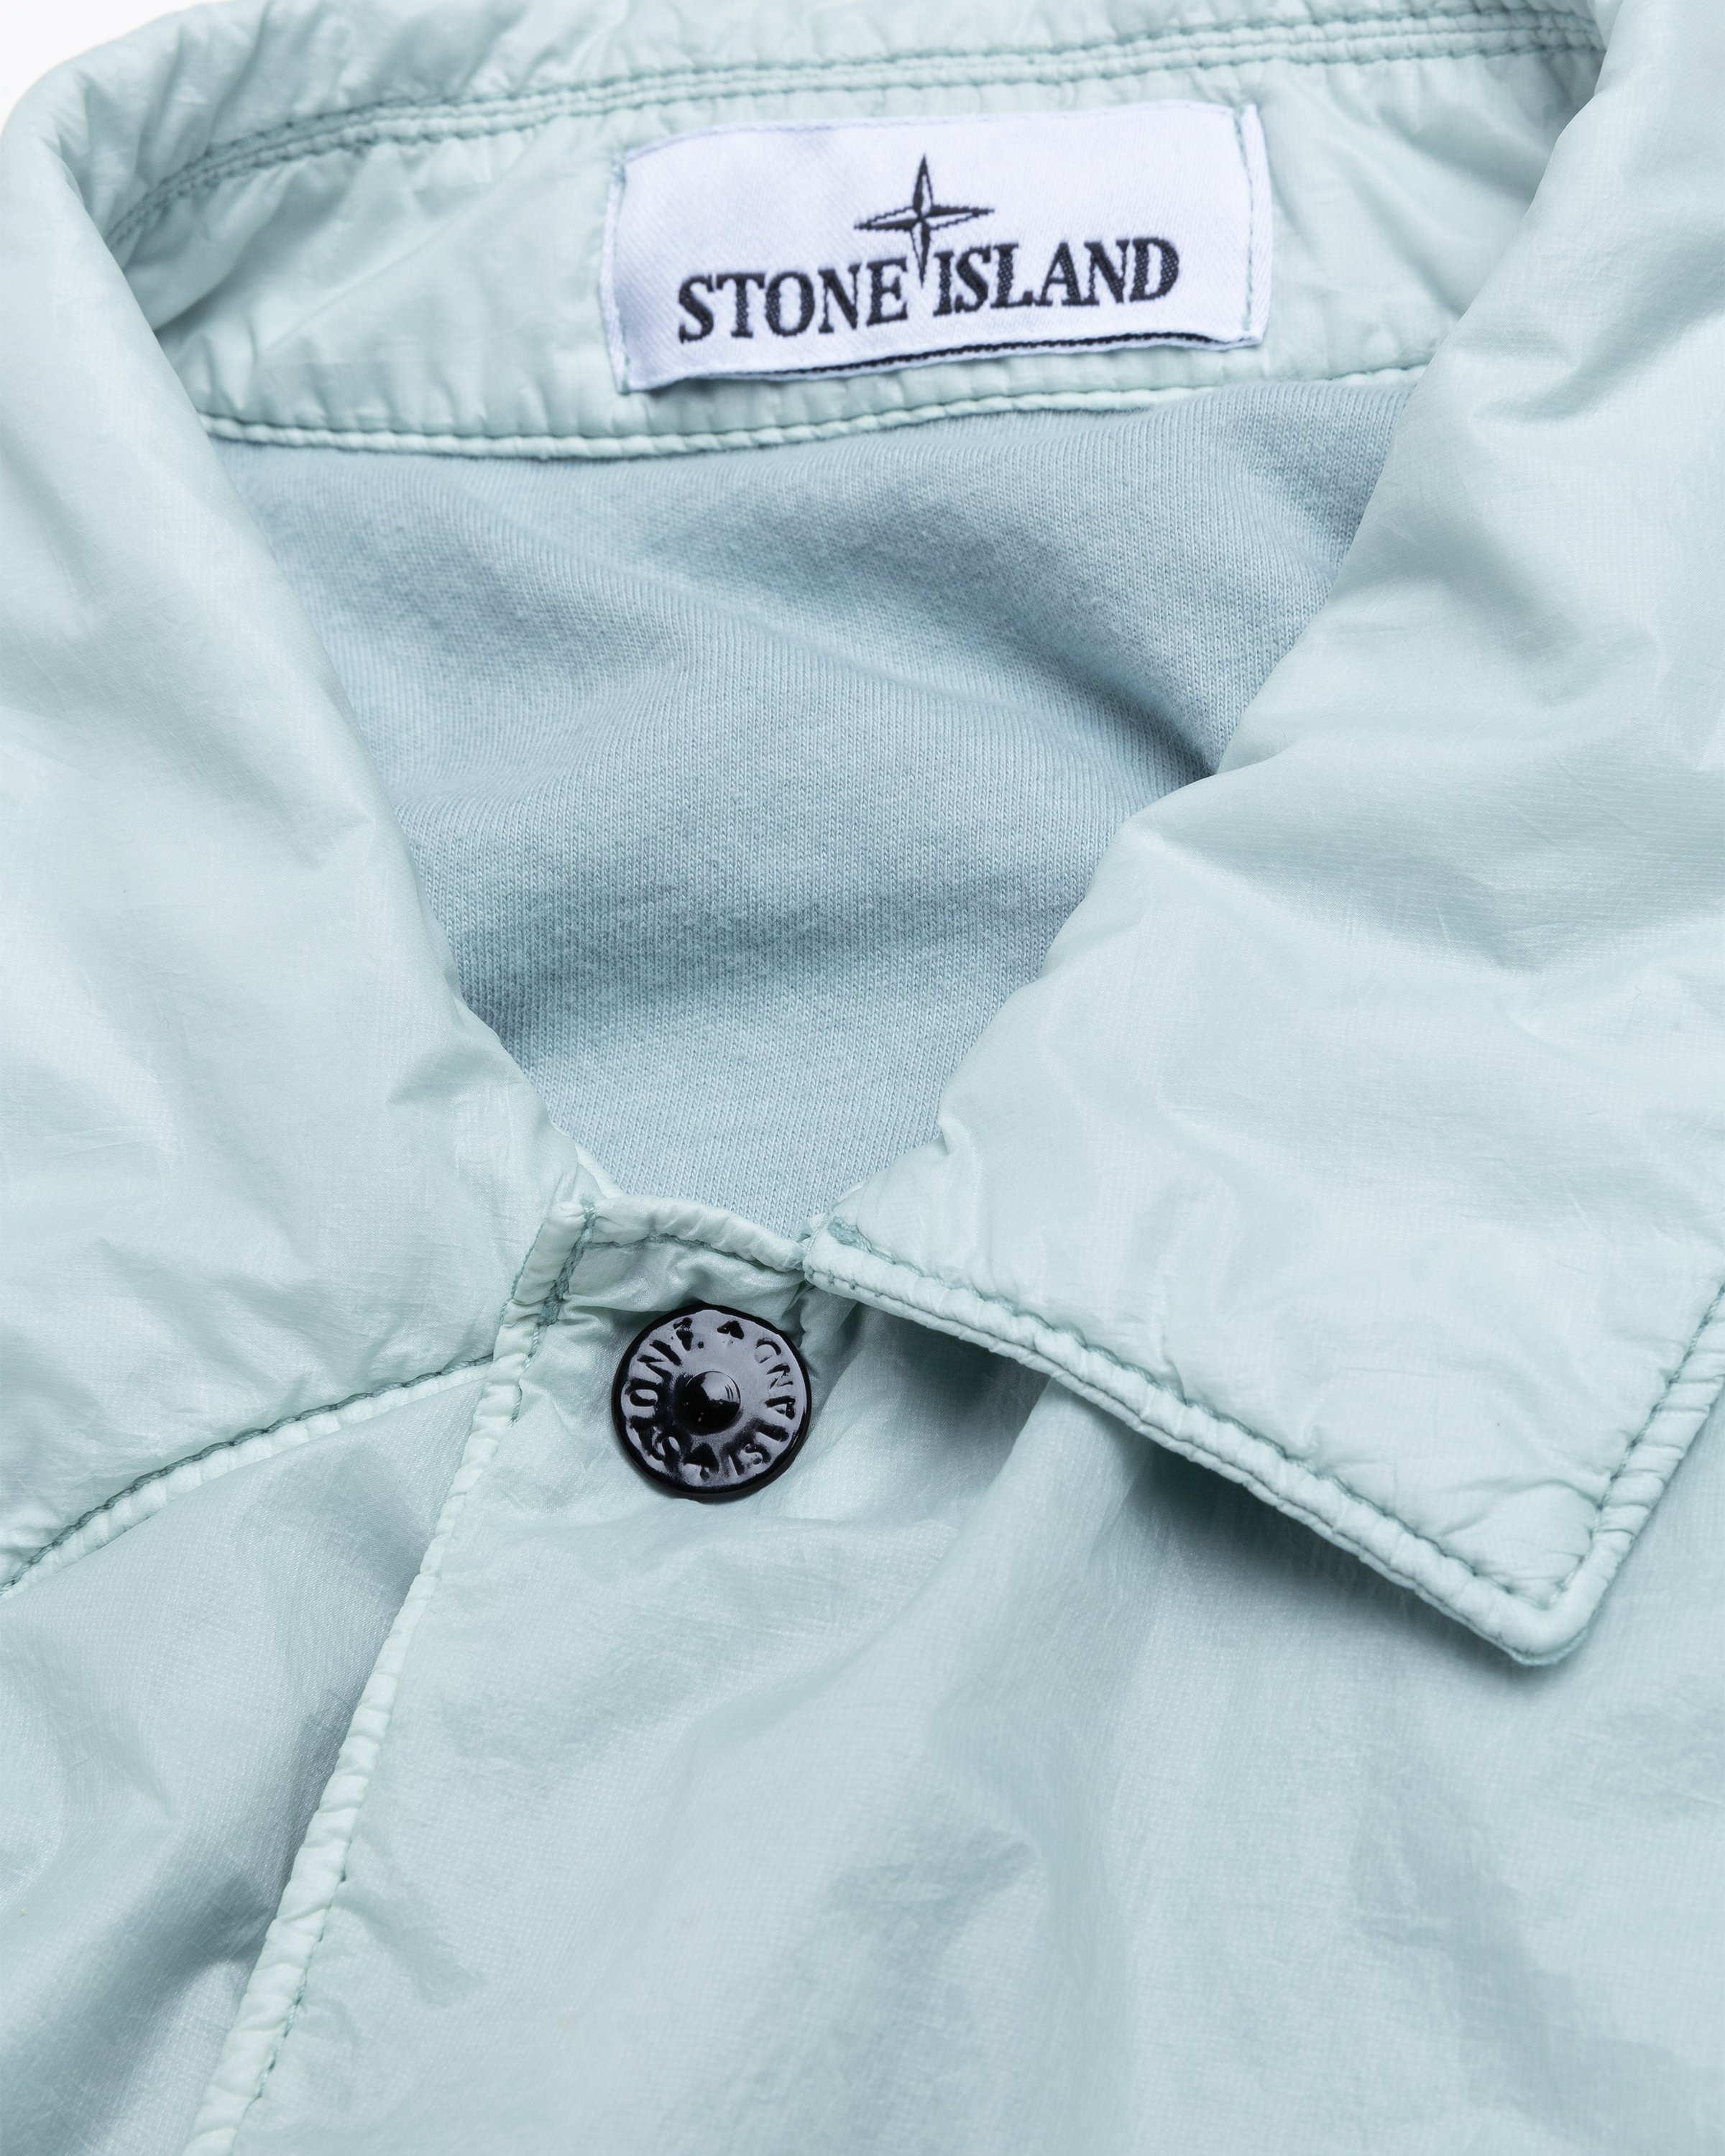 Stone Island - Overshirt Sky Blue 11025 - Clothing - Blue - Image 5